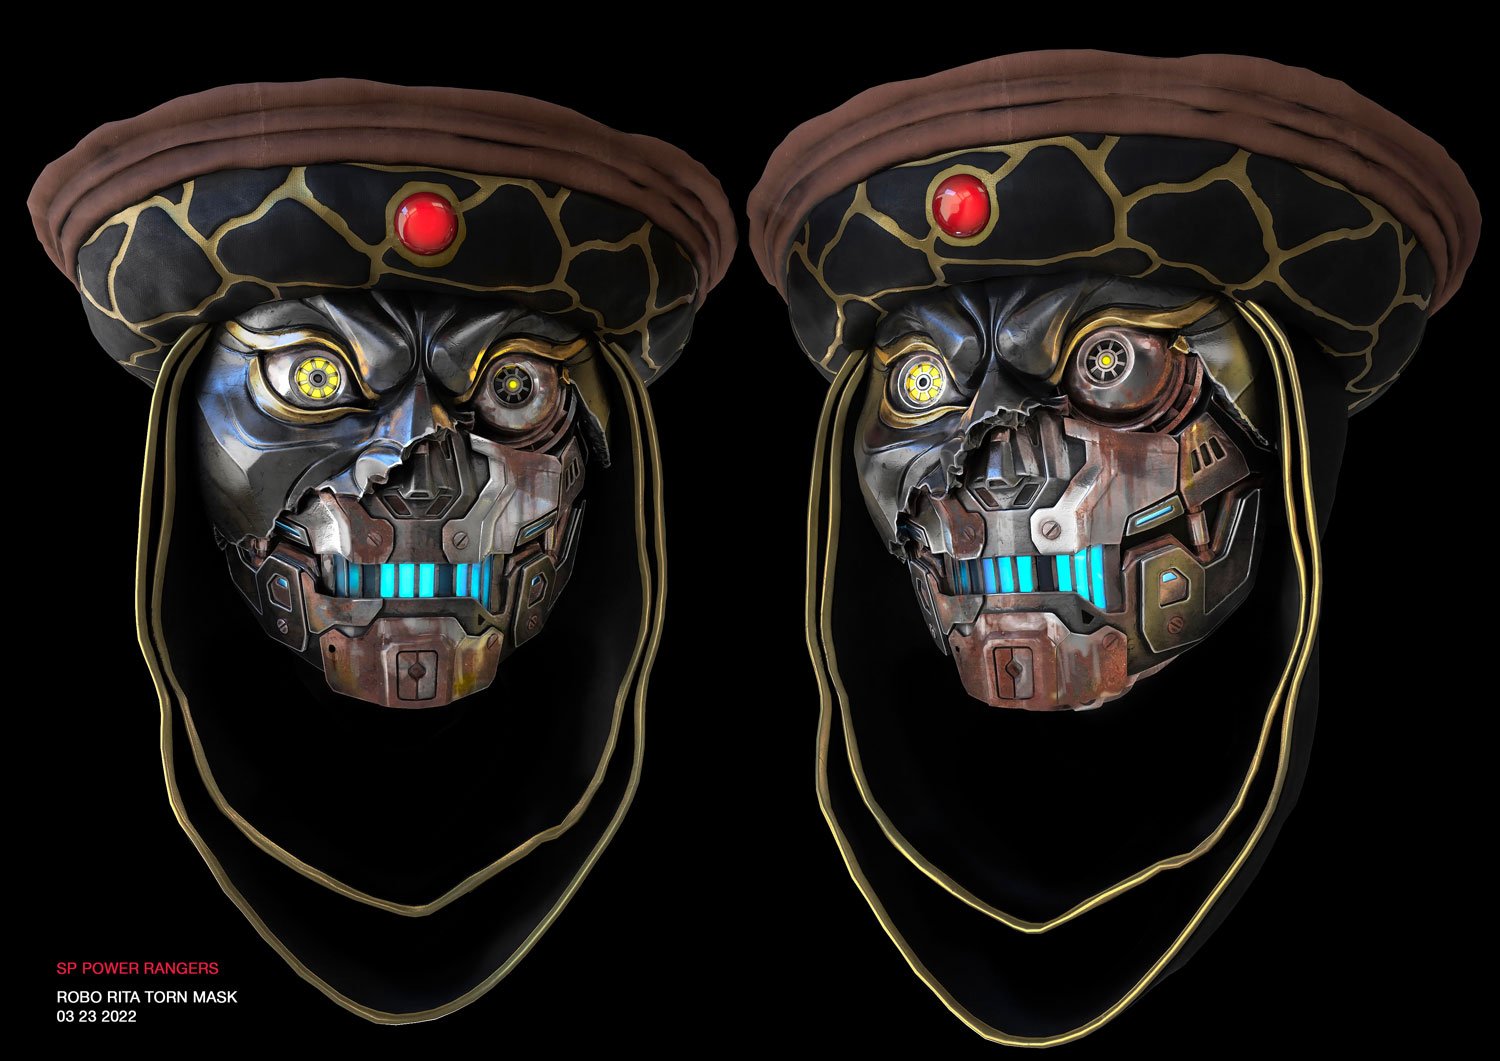 Robo Rita's Mask - Concept